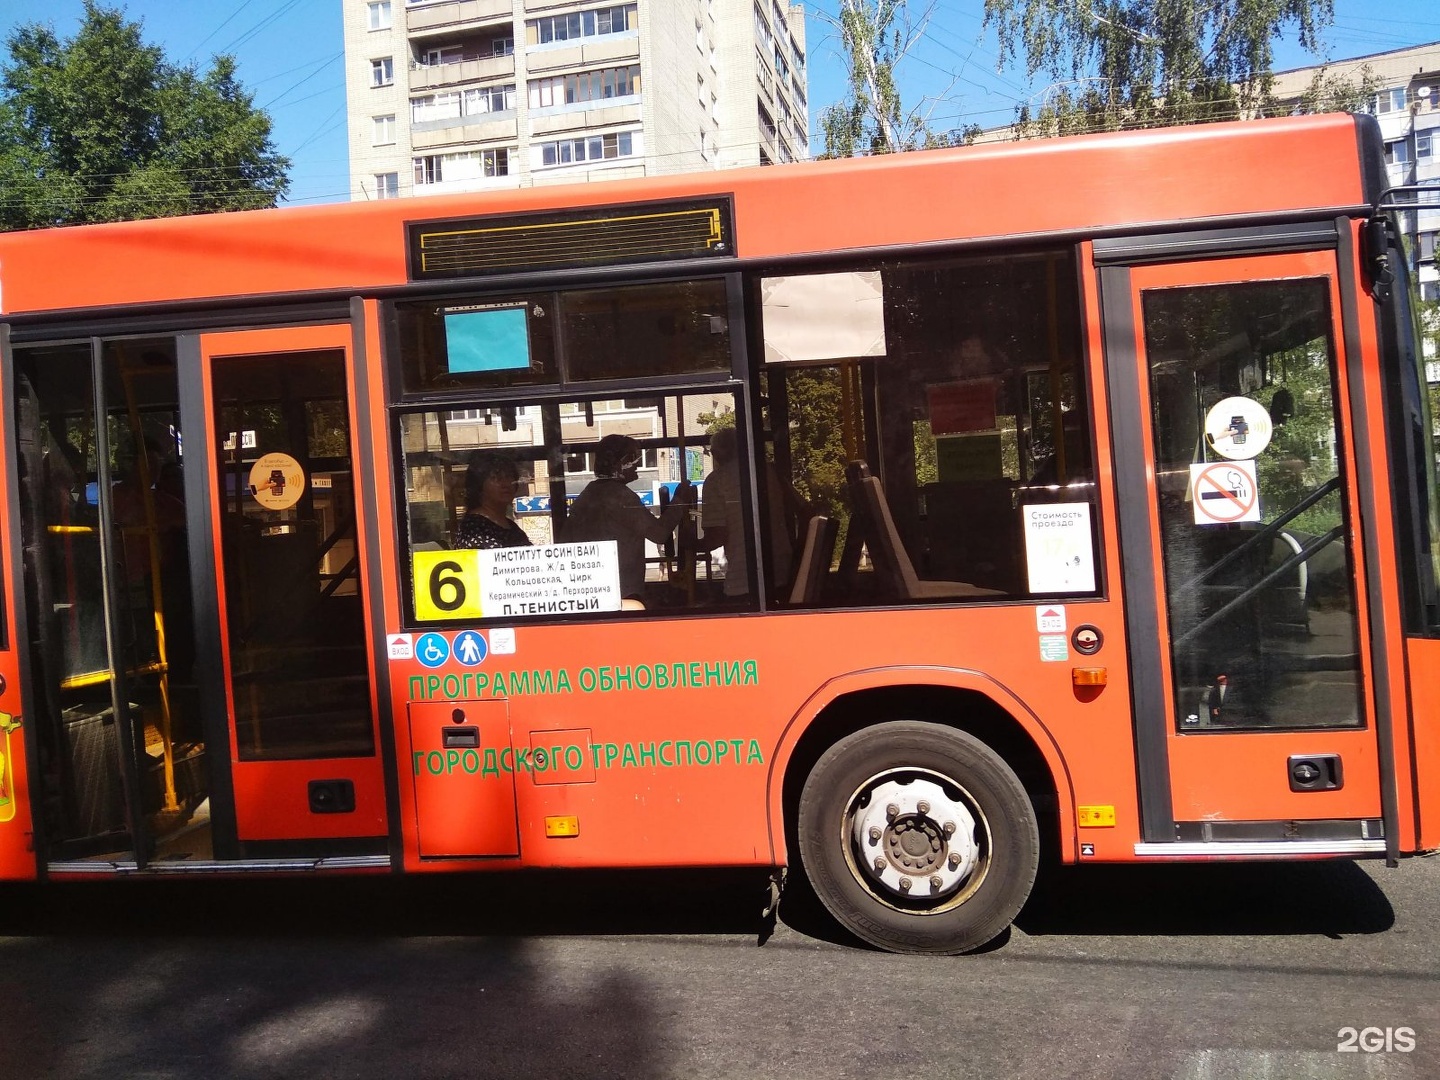 Пятьдесят шестой автобус